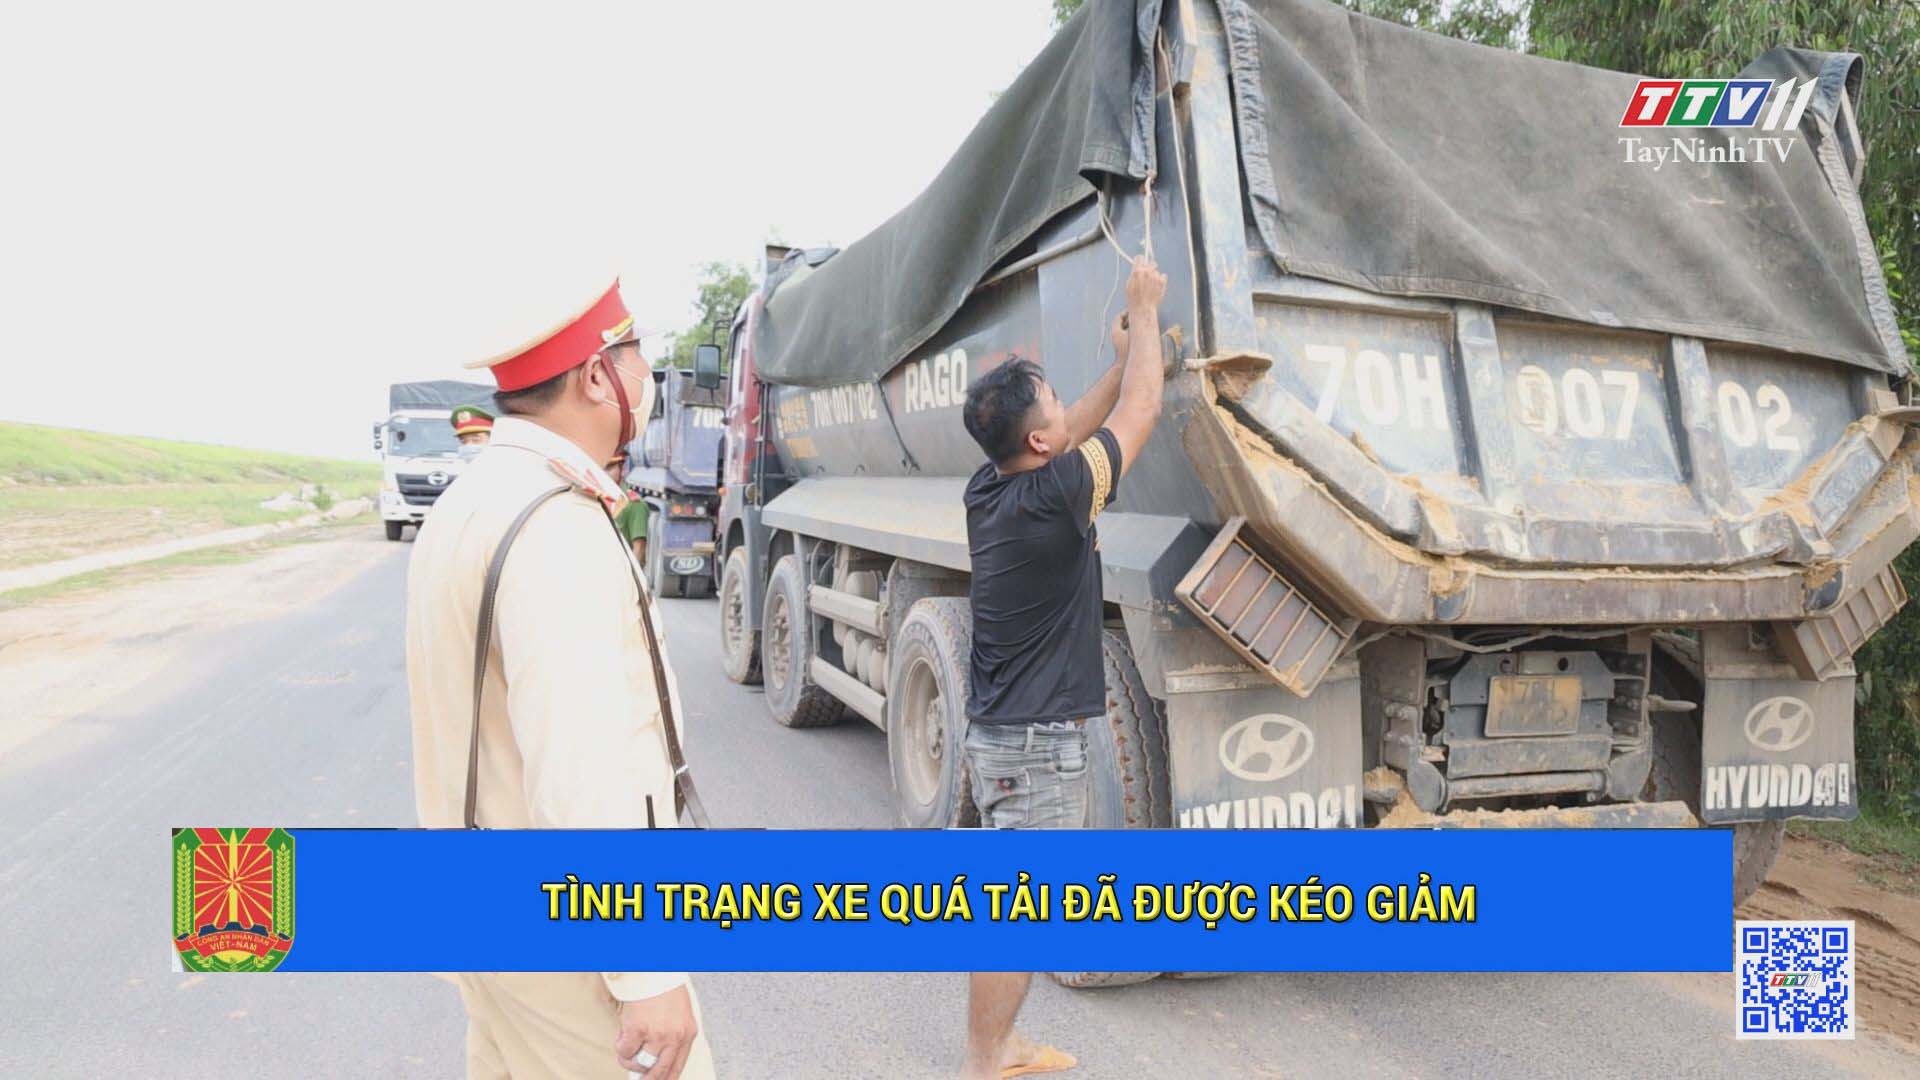 Tình trạng xe quá tải đã được kéo giảm | An Ninh Tây Ninh | TayNinhTV